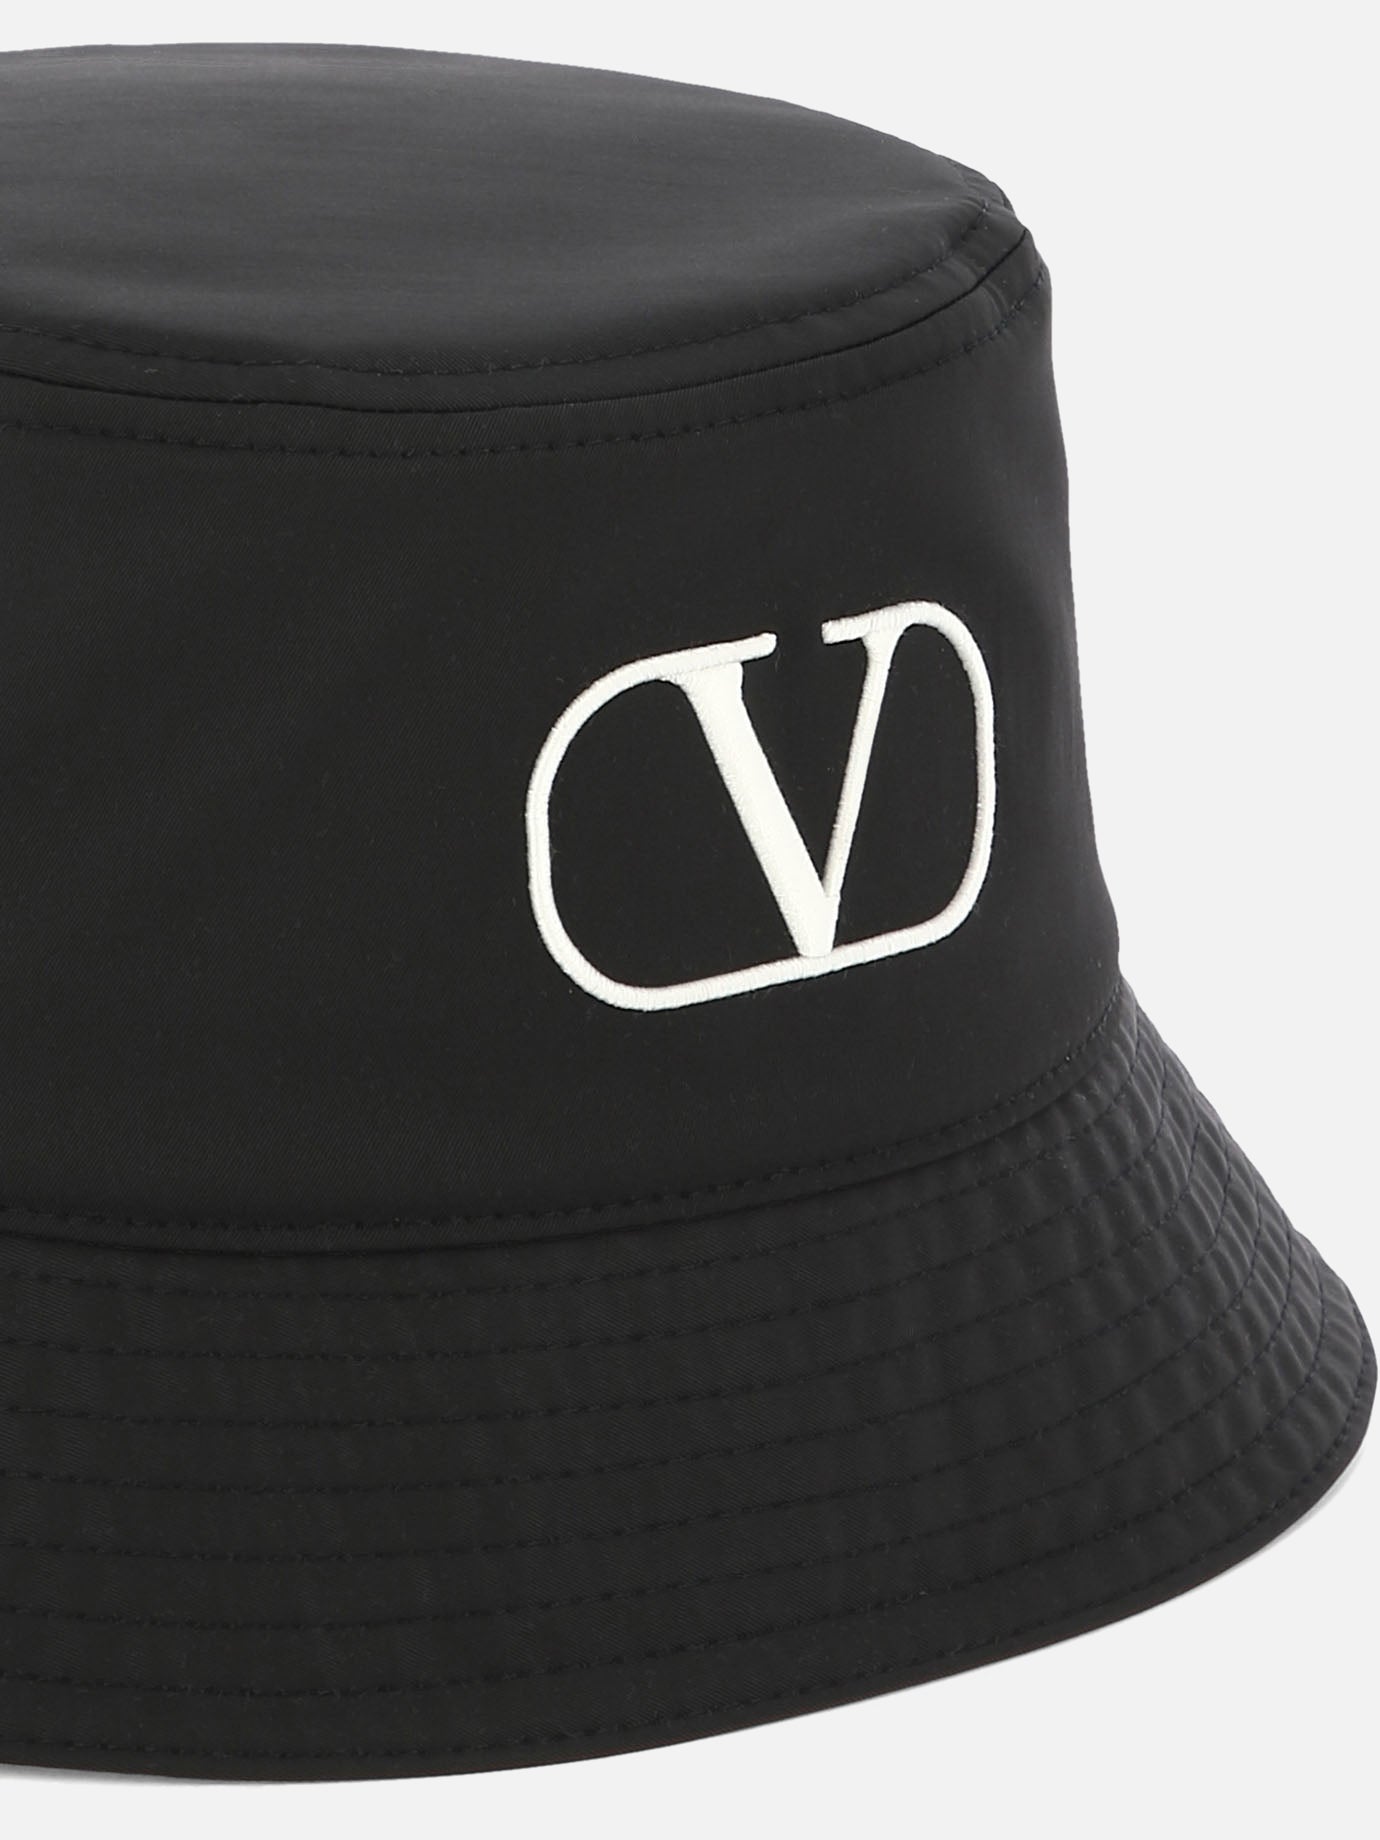 "VLogo" bucket hat